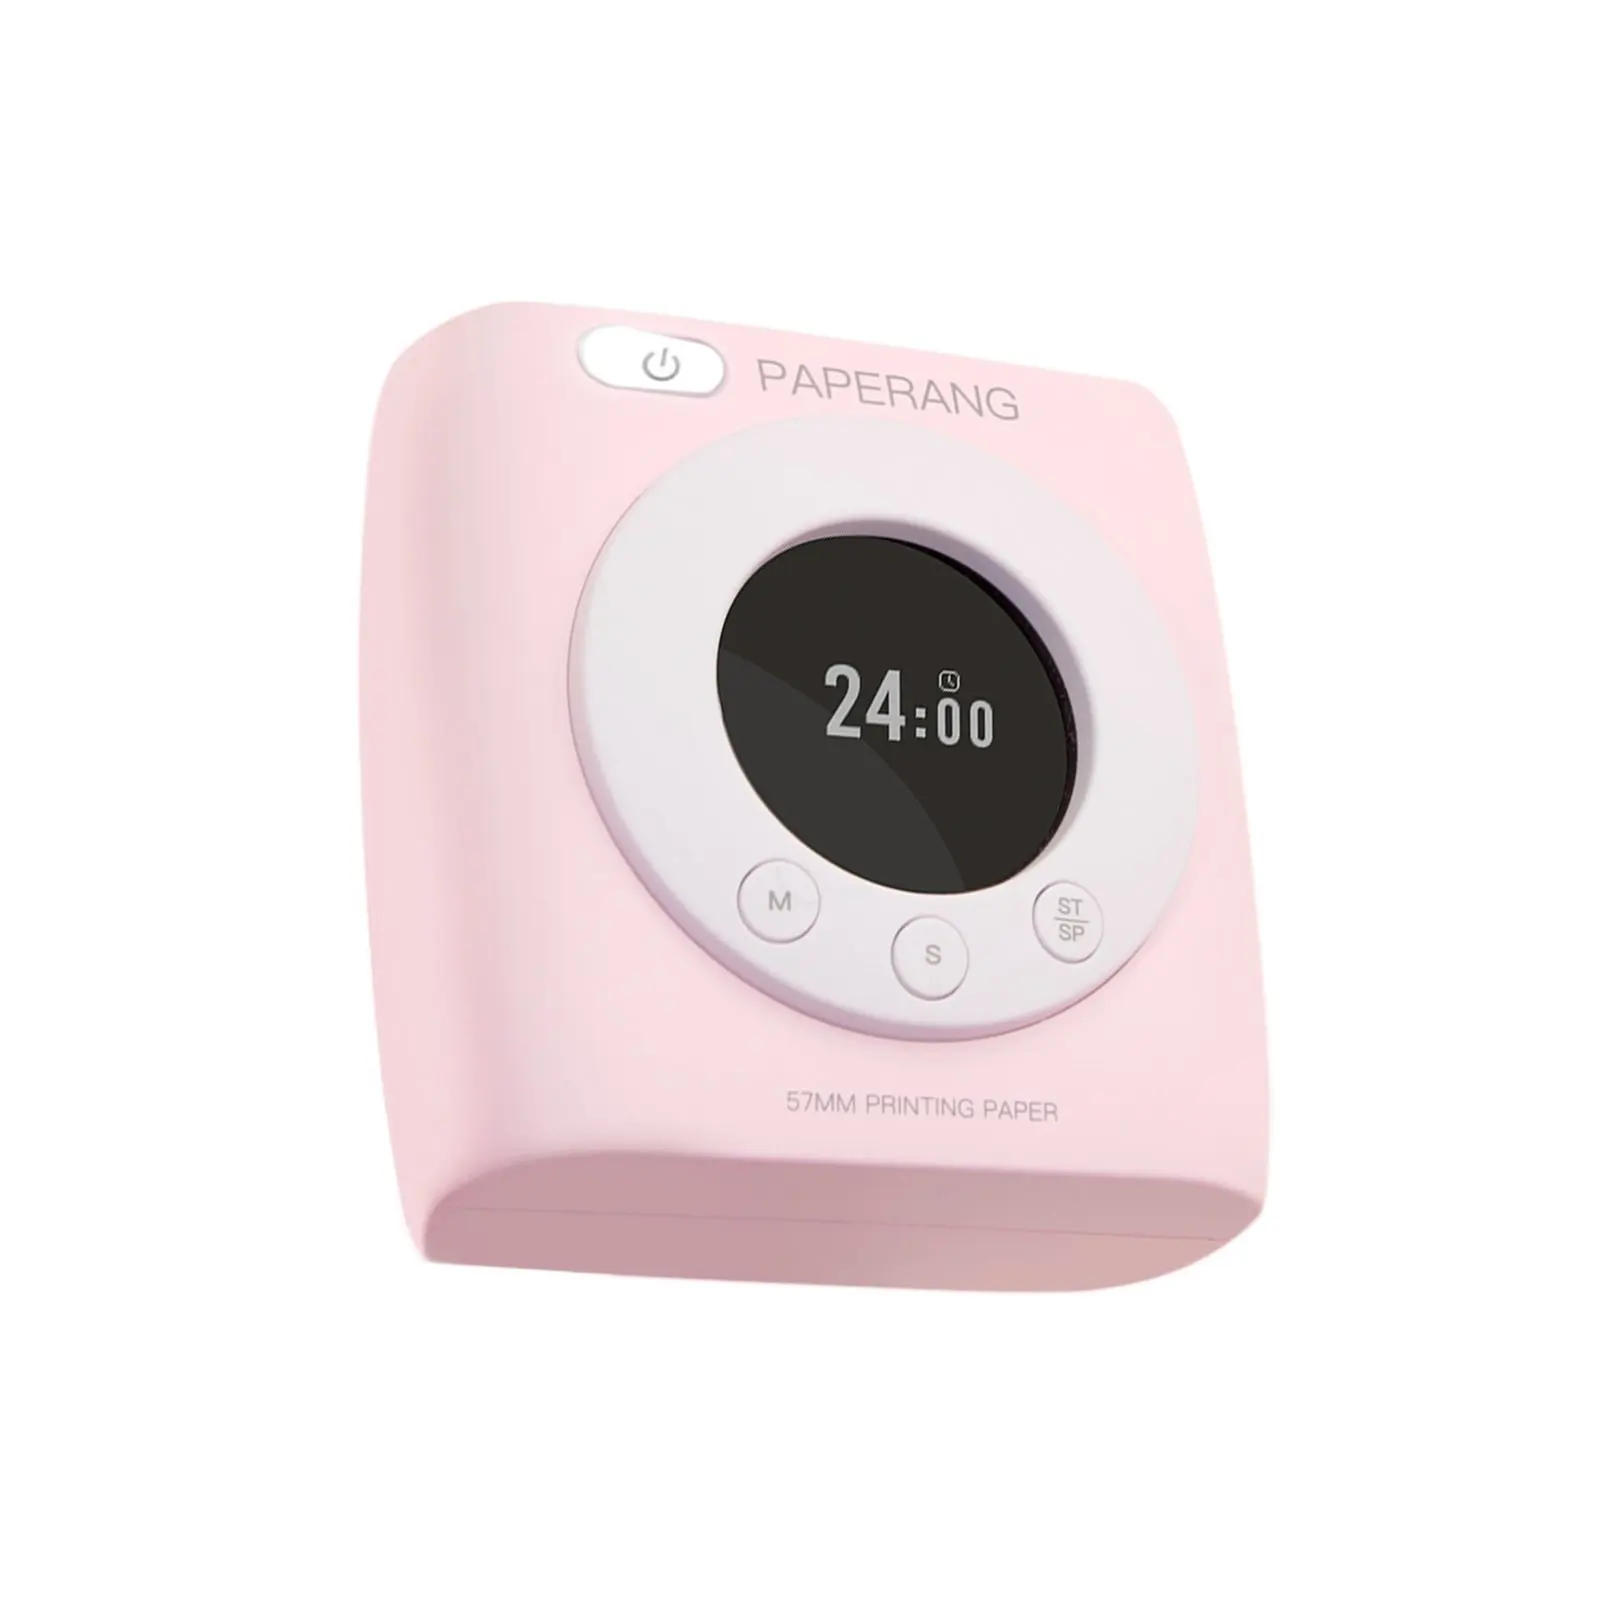 PAPERANG-Impresora térmica inalámbrica de bolsillo P2S, dispositivo de impresión Mini con conexión de teléfono BT4.0, Compatible con Android e iOS, color rosa